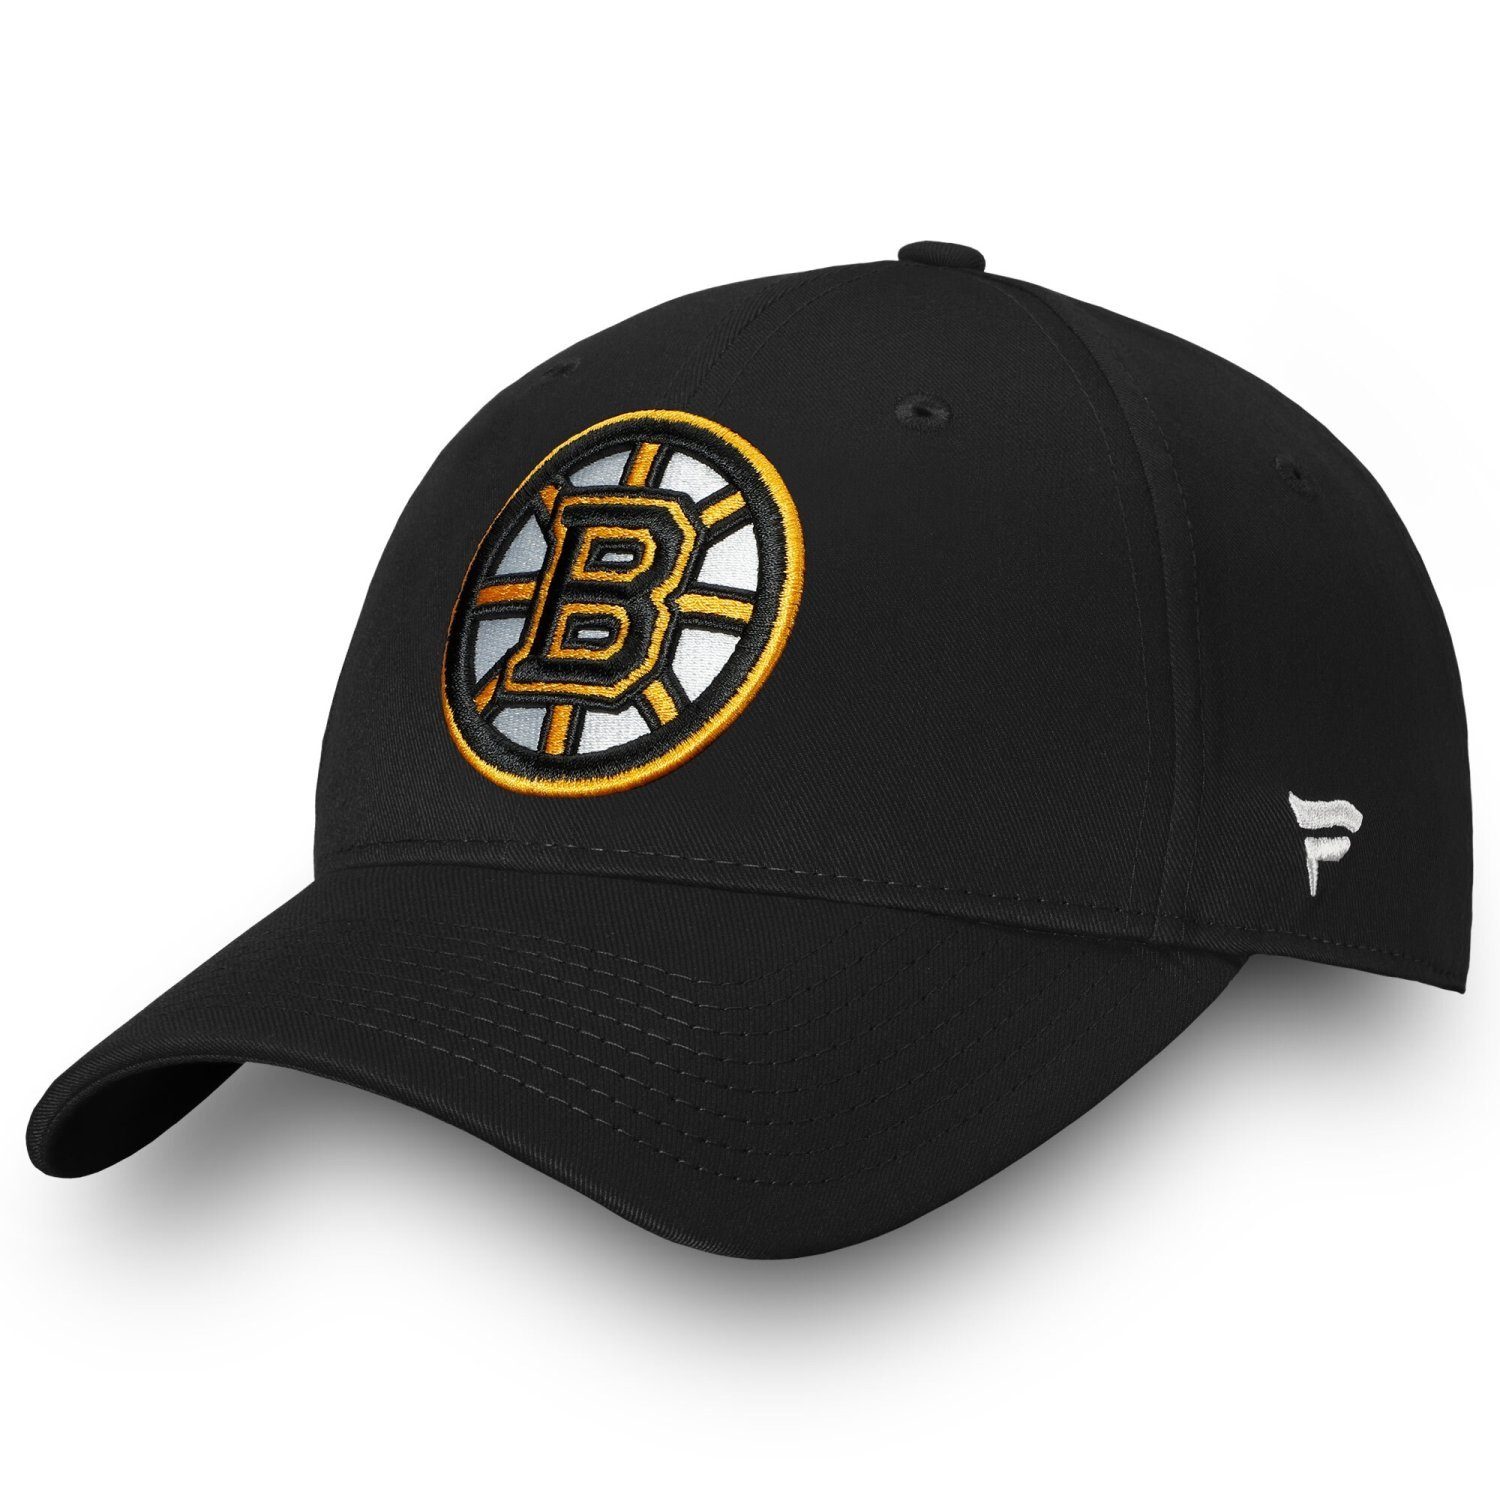 Herren Caps Fanatics Baseball Cap NHL LEAGUE Boston Bruins